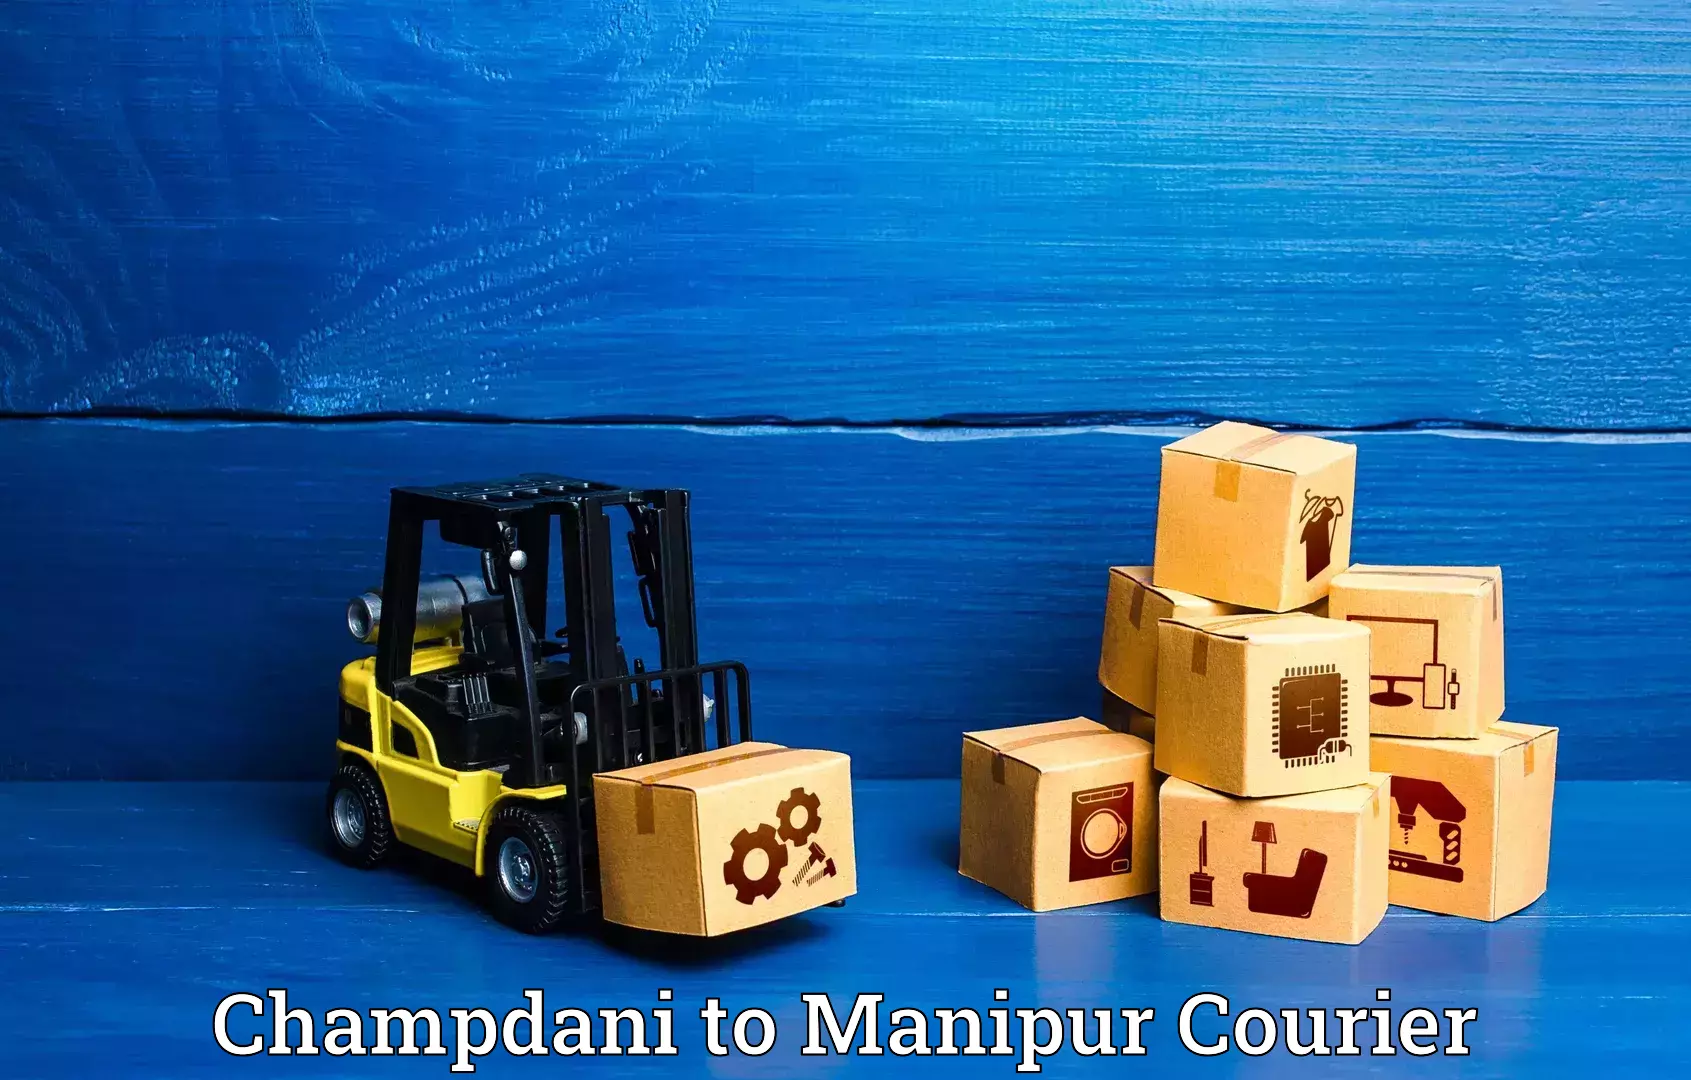 Luggage transport service Champdani to Kanti